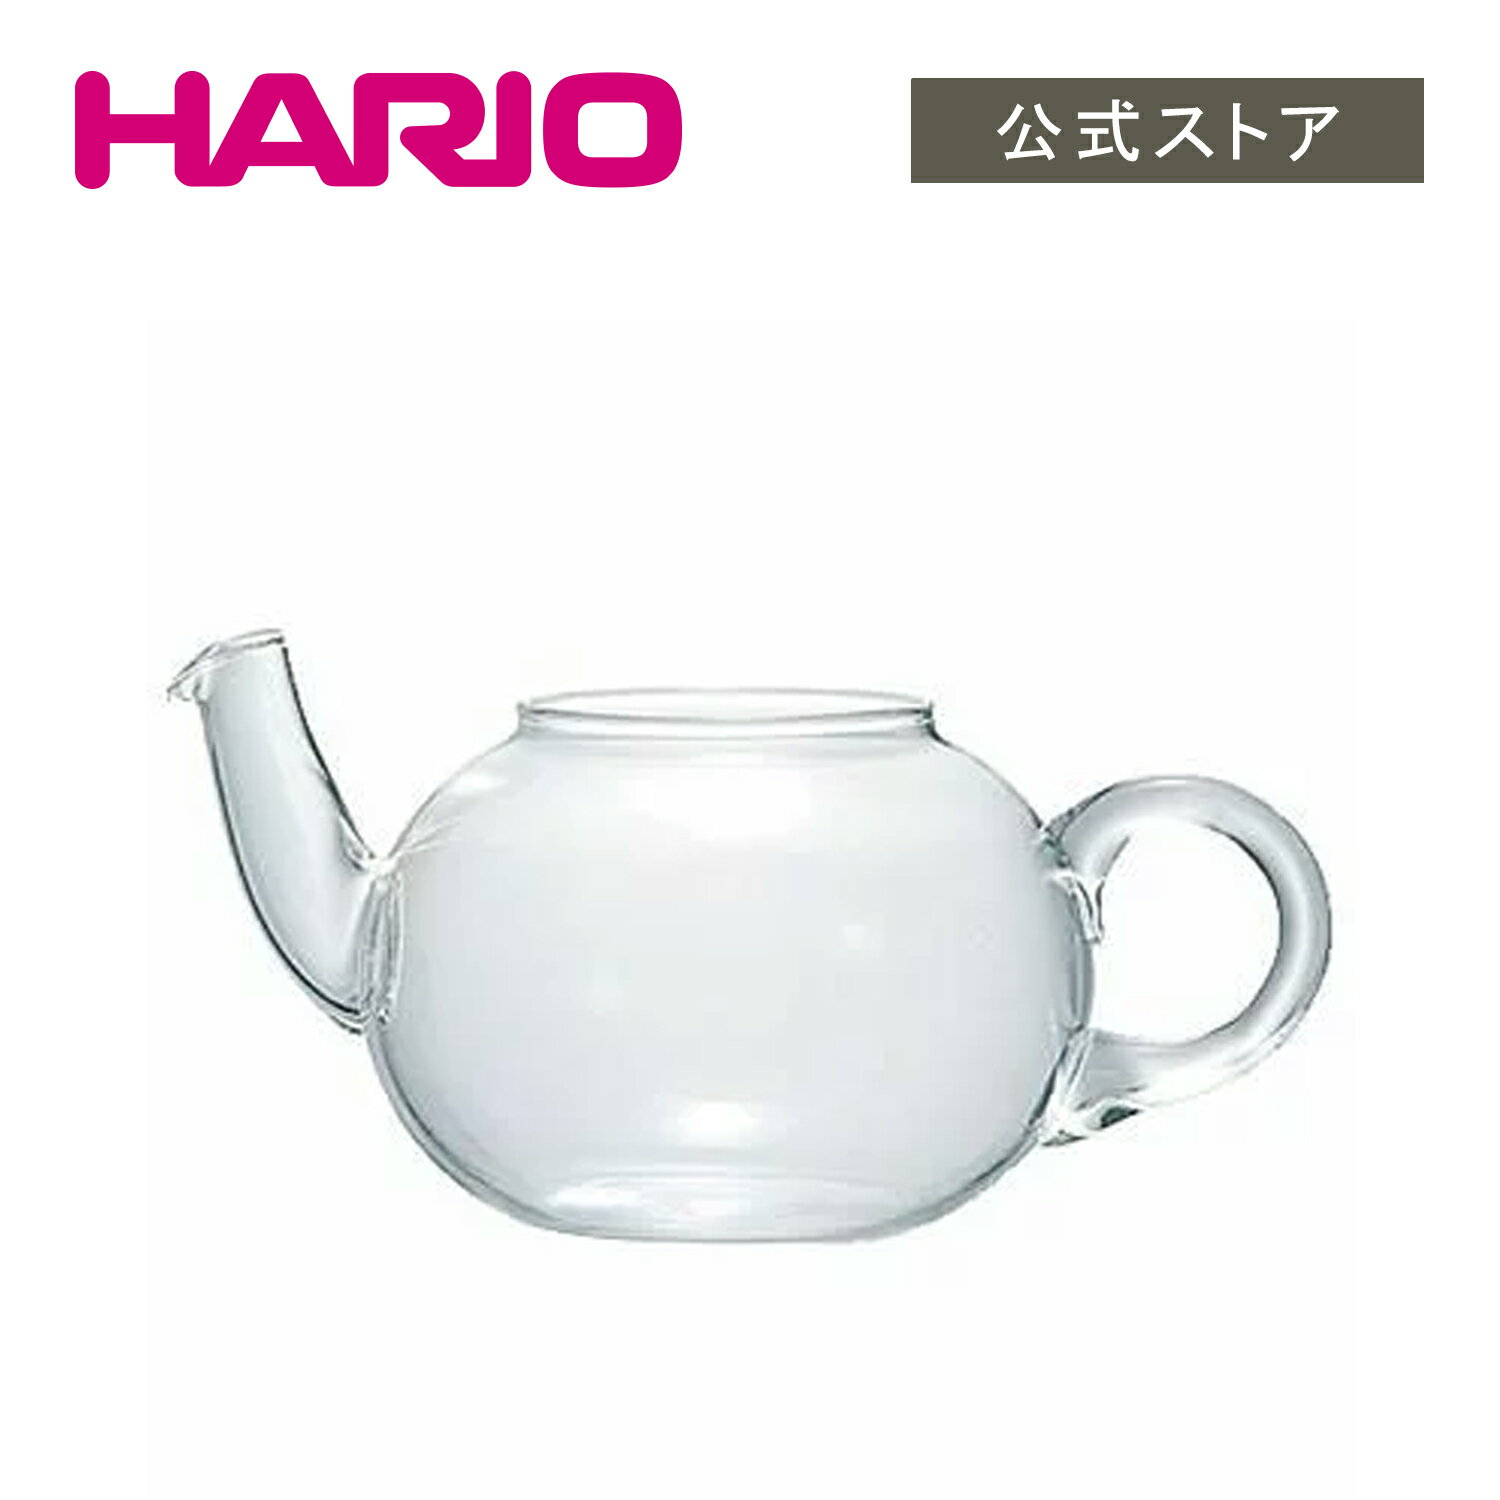 【公式ショップ】HARIO TDN-4スペアボール